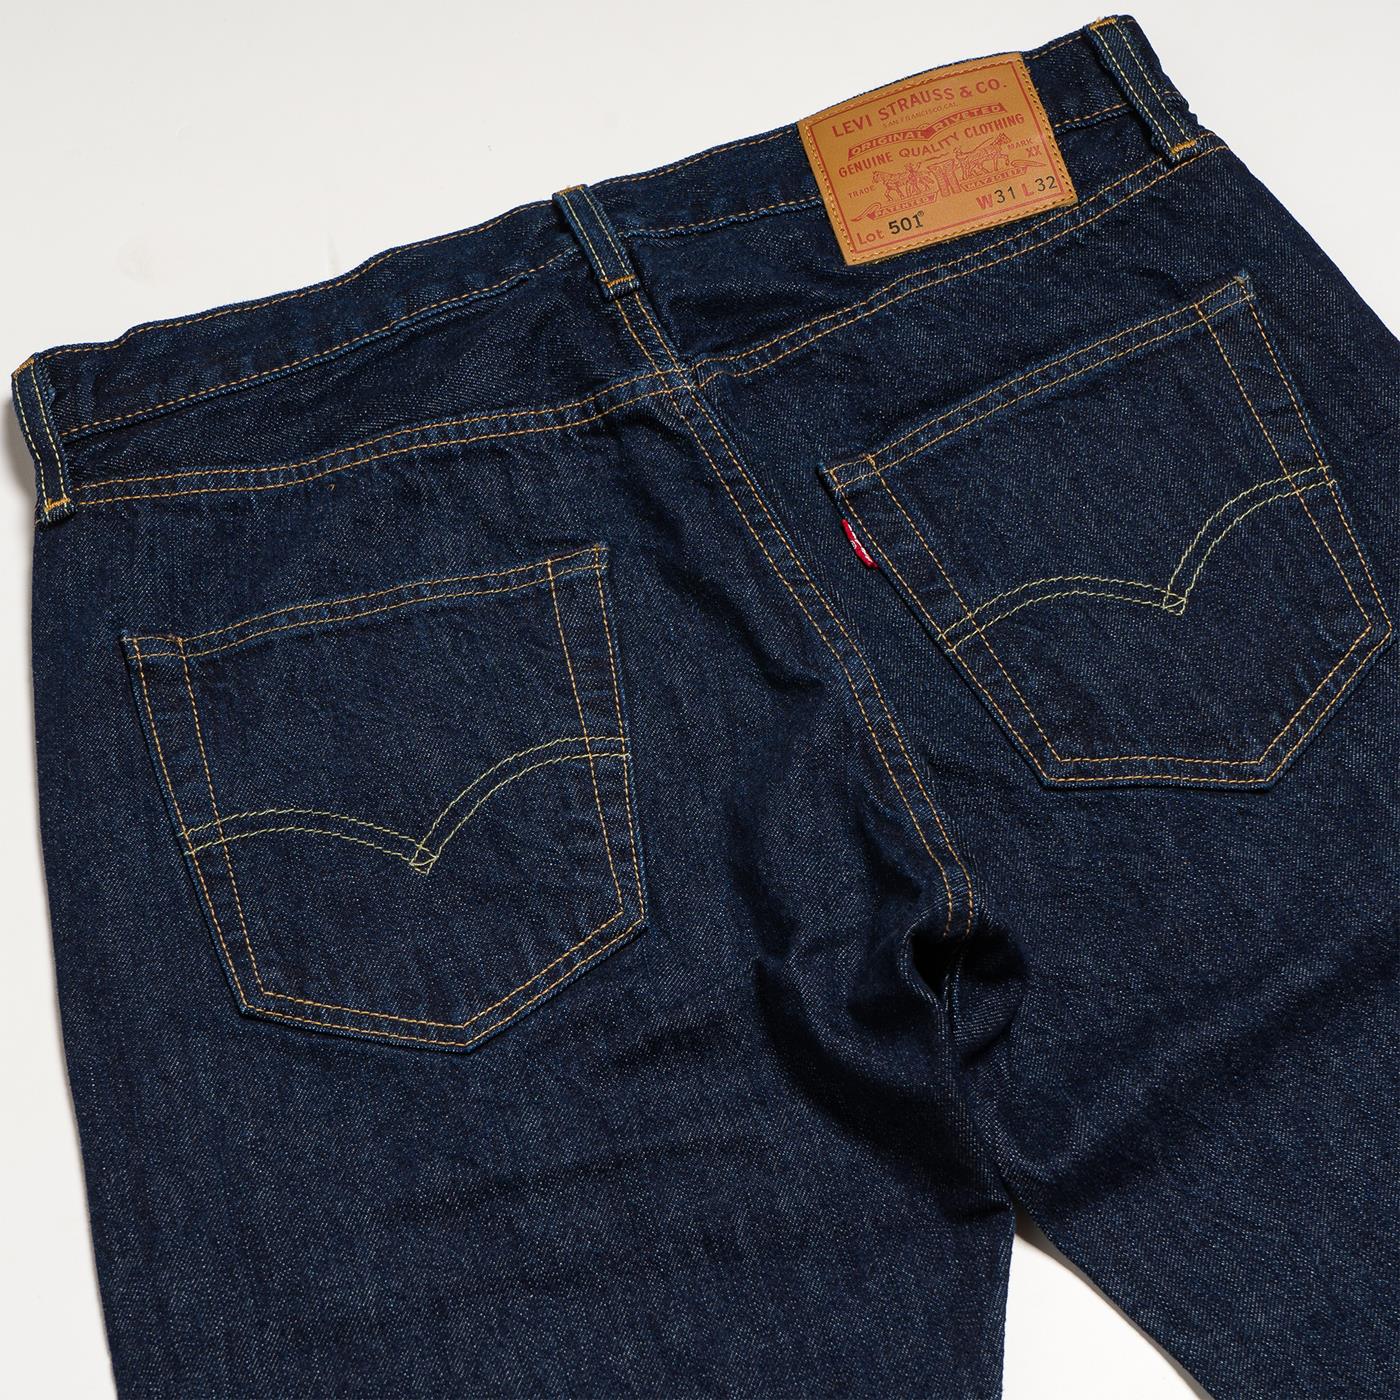 Pants Levis 501® Original Pant Blue for Man | 00501-0101 | XTREME.PT